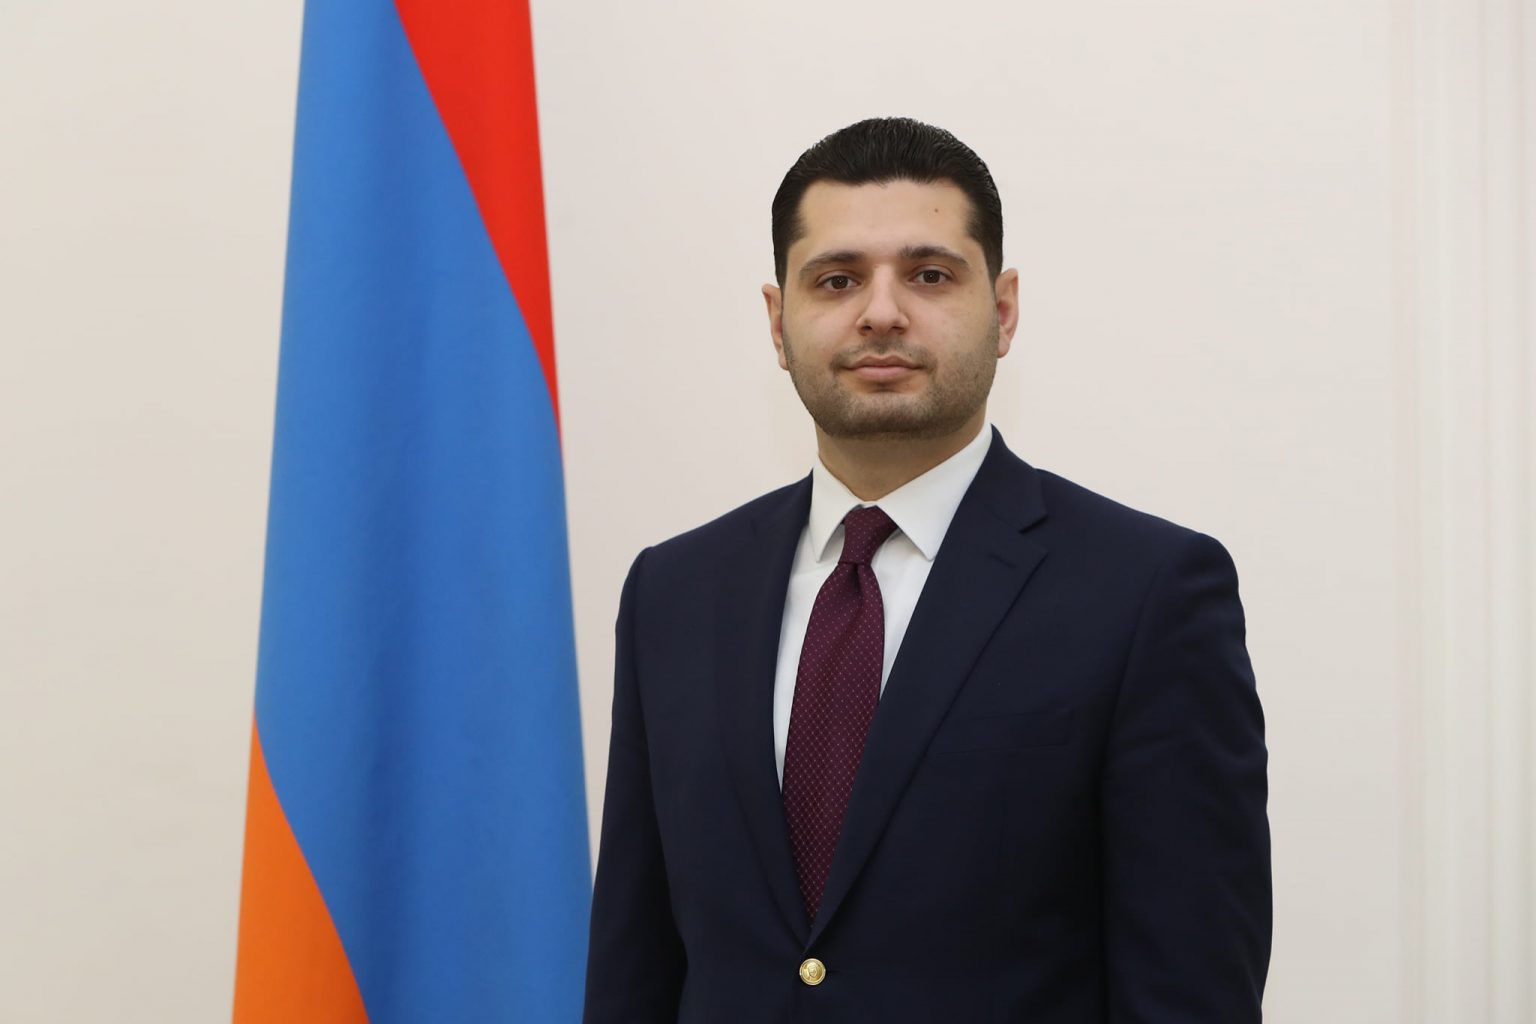 ՀՀ փոխվարչապետը Նավրոզի կապակցությամբ քրդերեն գրառումով շնորհավորել է Հայաստանի քրդական համայնքին  